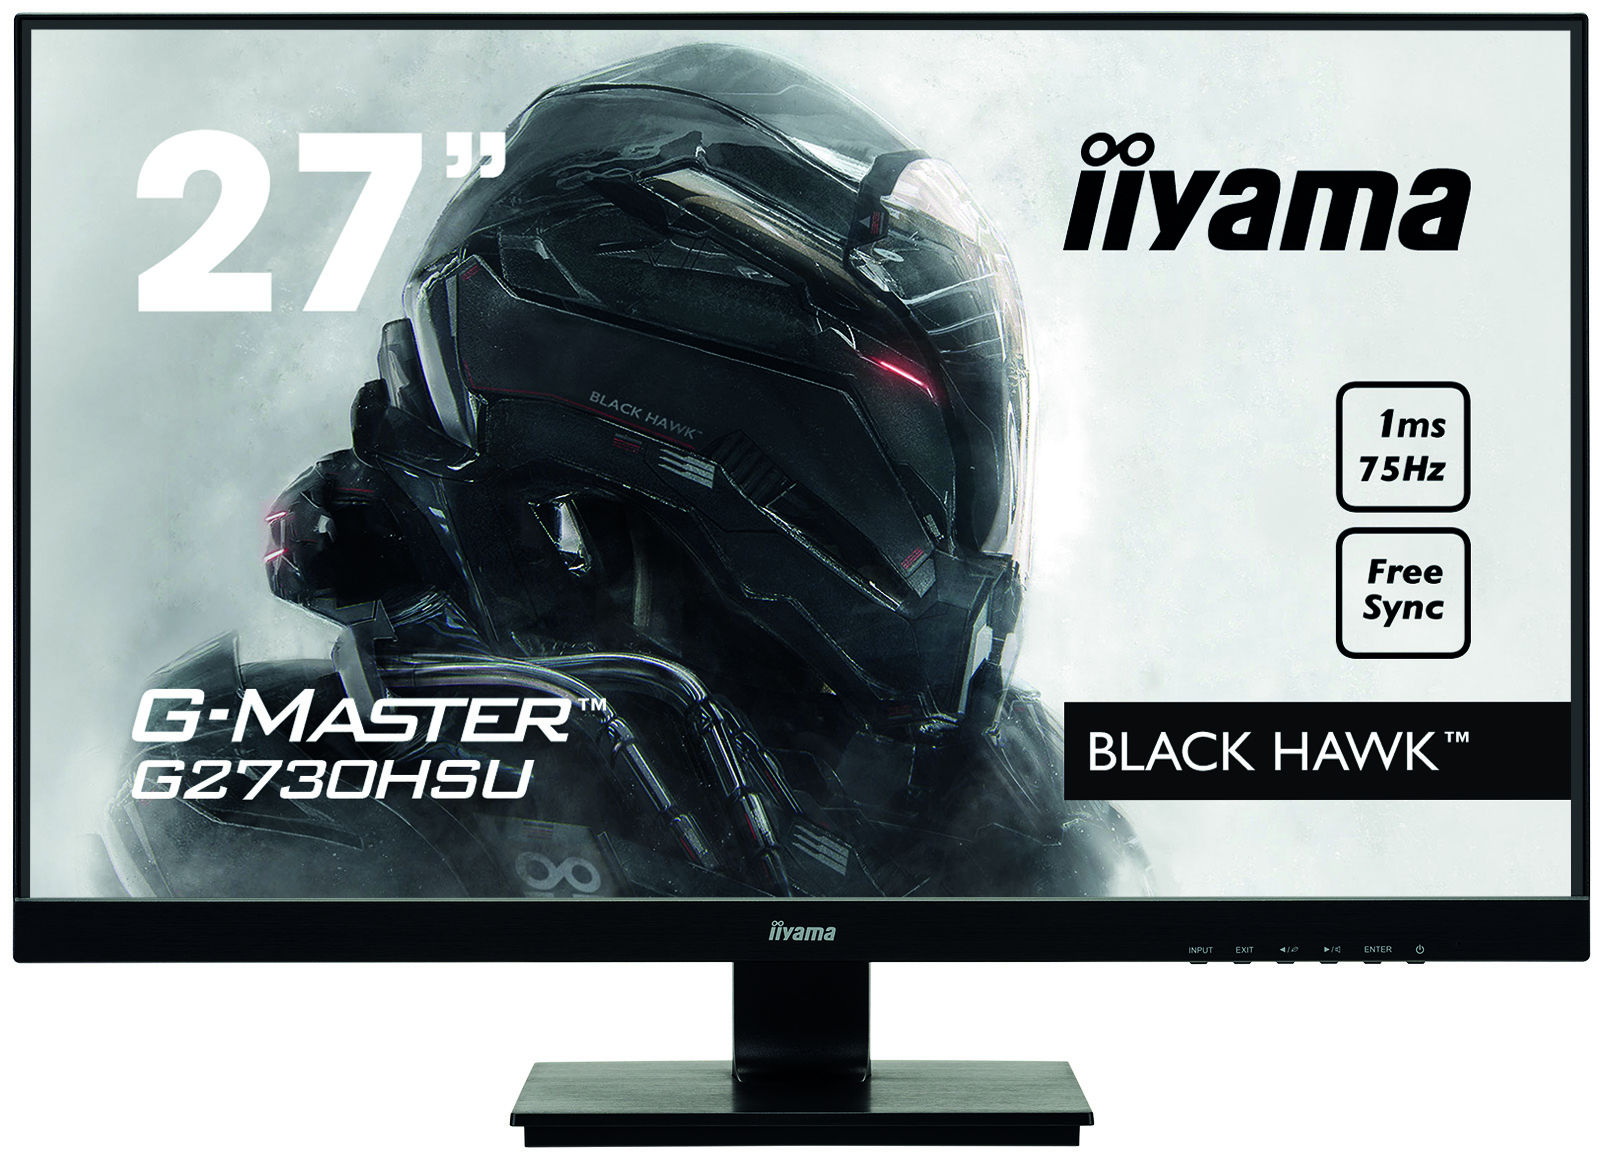 Iiyama G-MASTER G2730HSU-B1 BLACK HAWK | 27" | 1920 x 1080 | @75Hz | Gaming Monitor